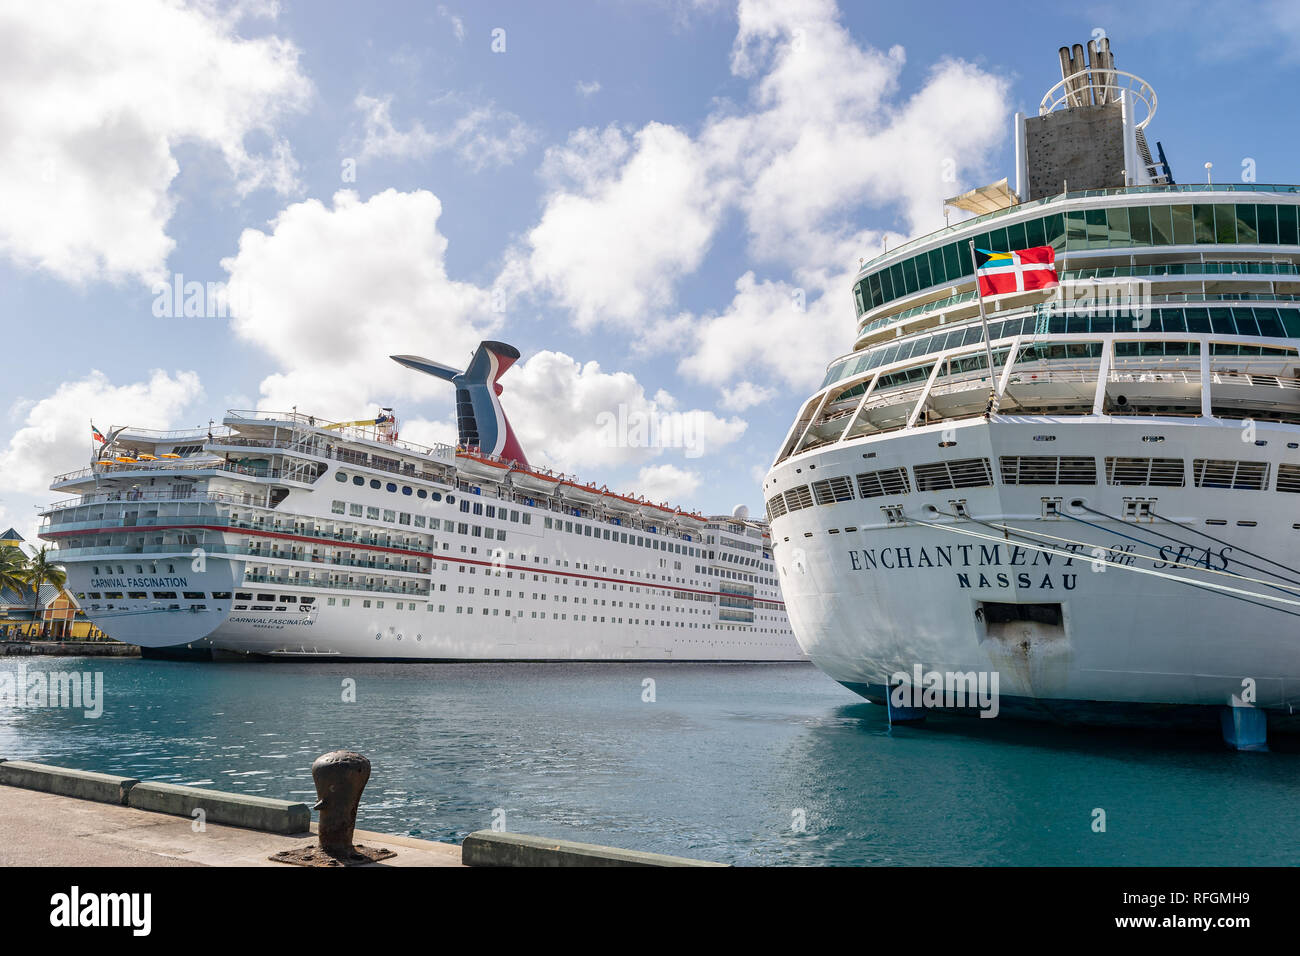 Nassau, Bahamas - 02 décembre 2015 : Carnival Fascination et Royal Caribbean Enchantment of the Seas les navires de croisière amarré au port de croisière Banque D'Images